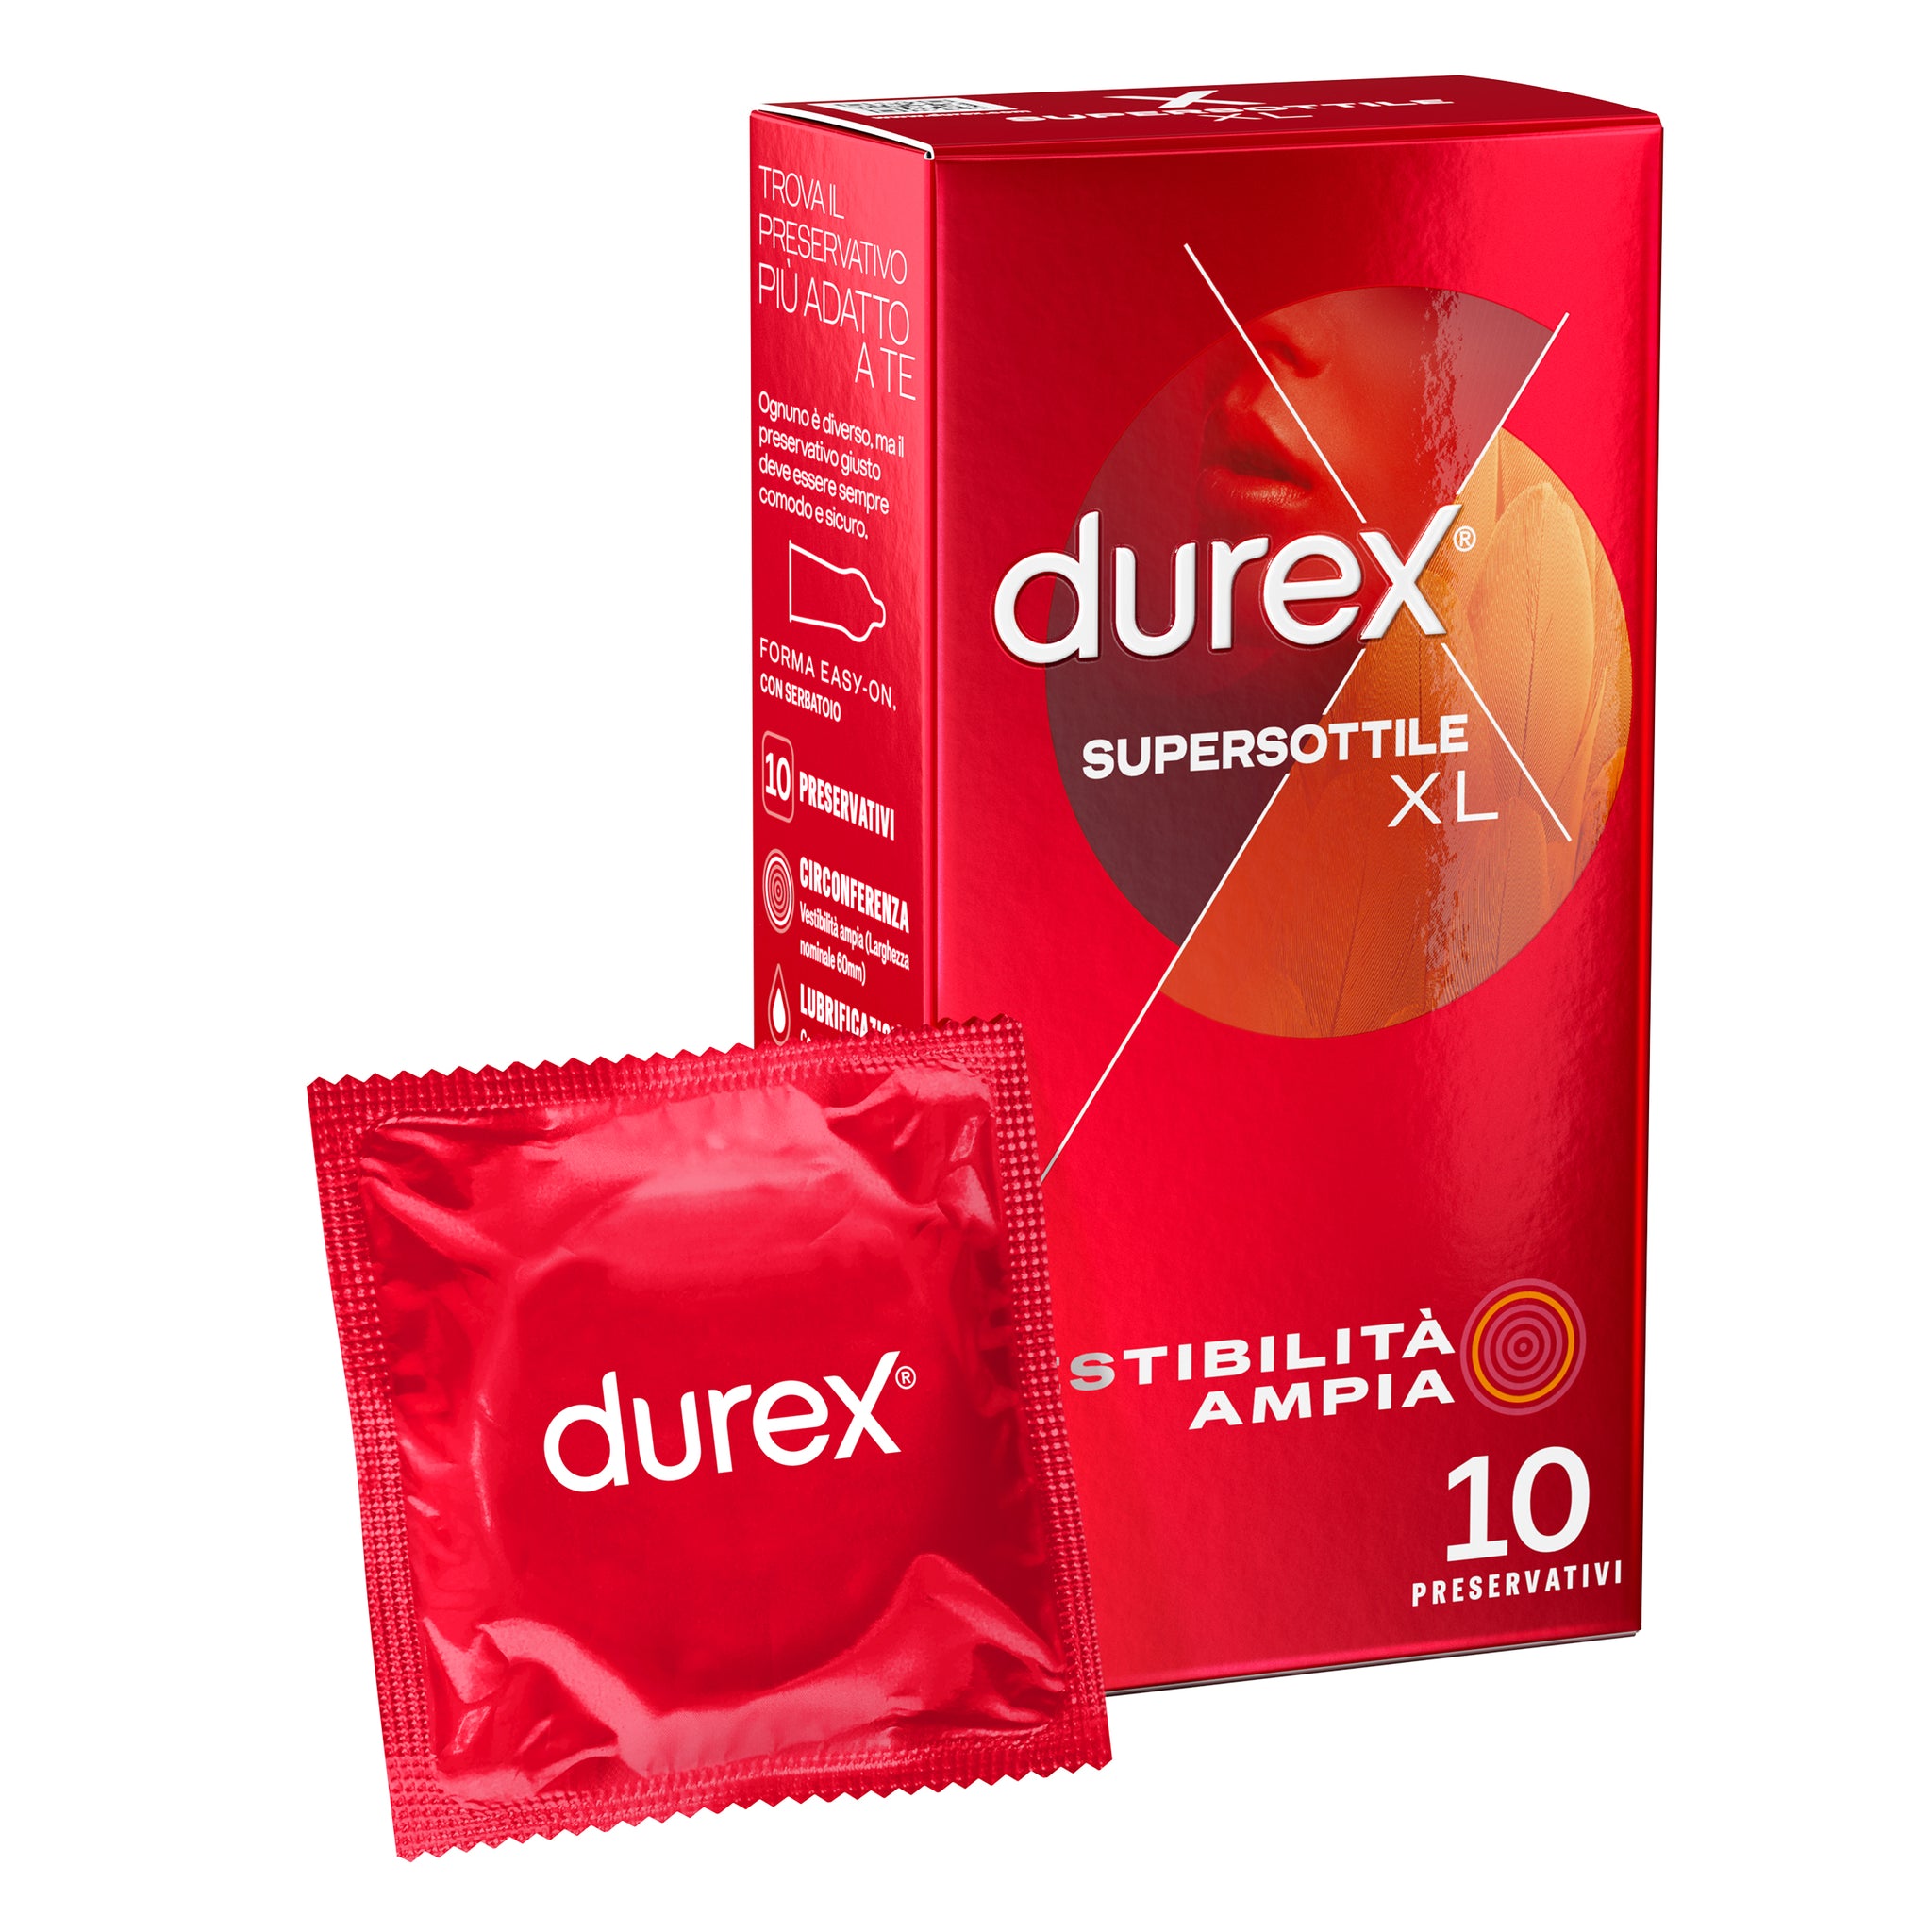 Durex Supersottile* XL 10pz